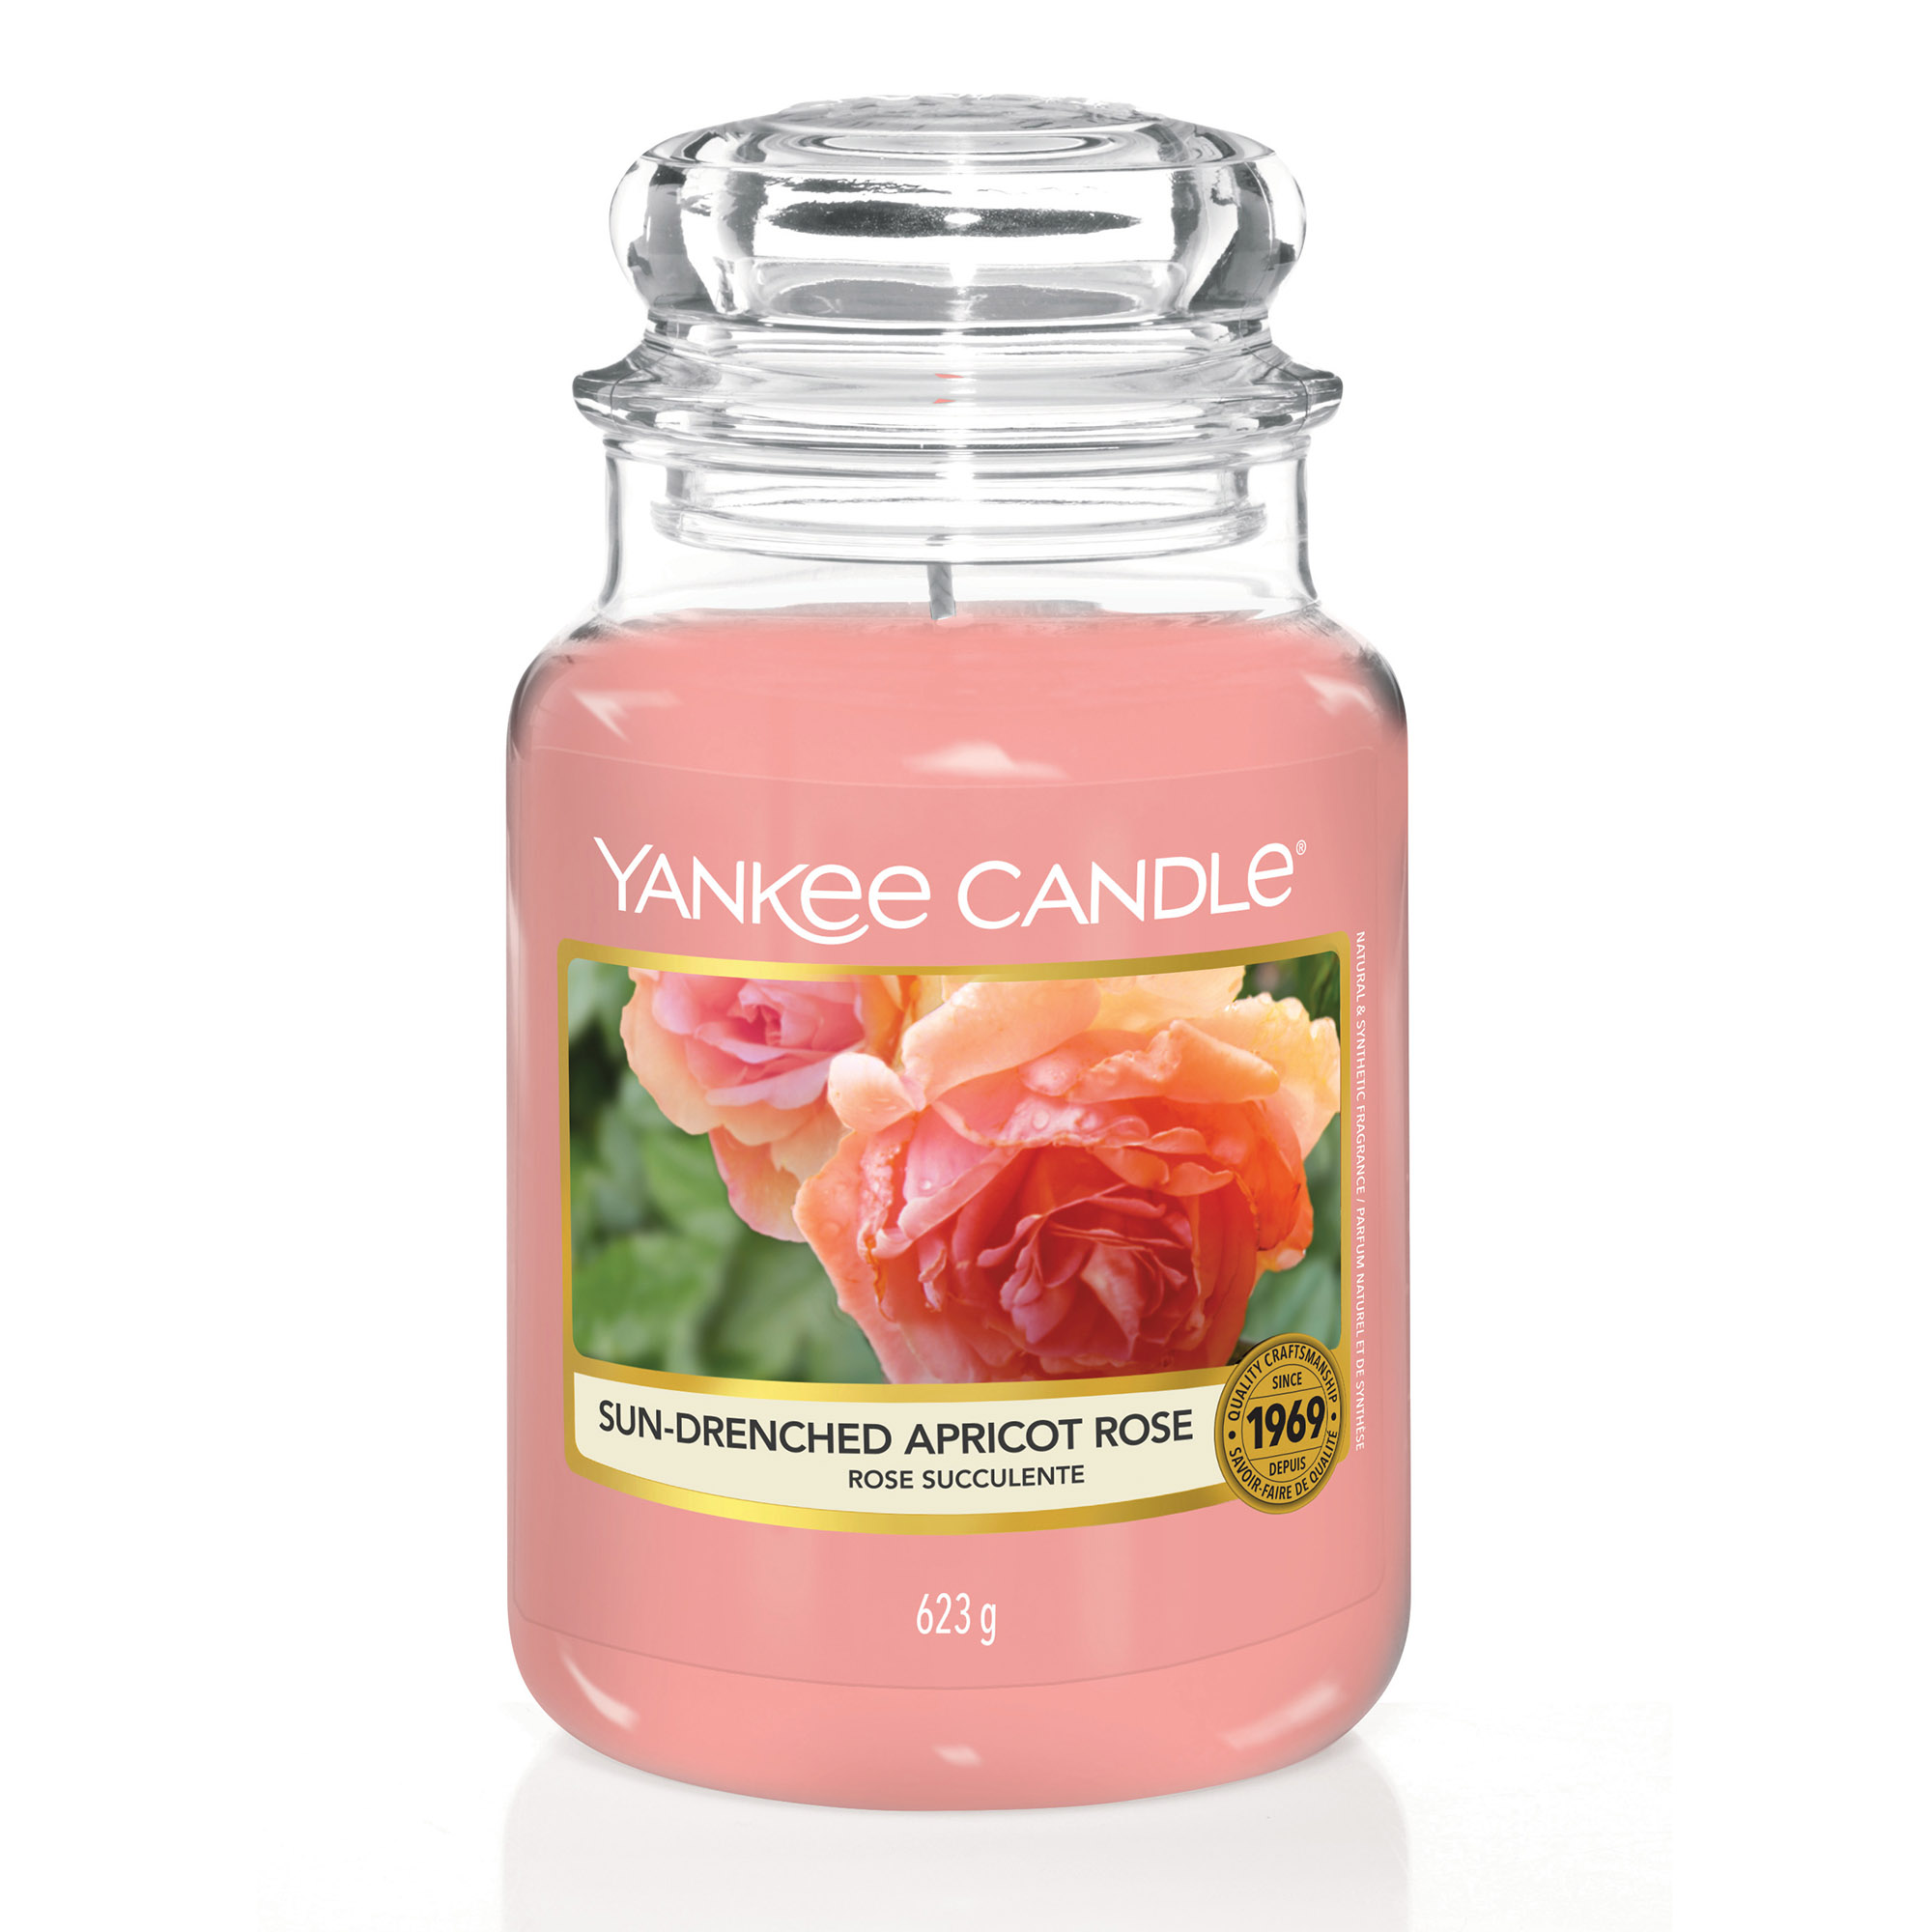 YANKEE CANDLE Große Kerze SUN-DRENCHED APRICOT ROSE 623 g Duftkerze 